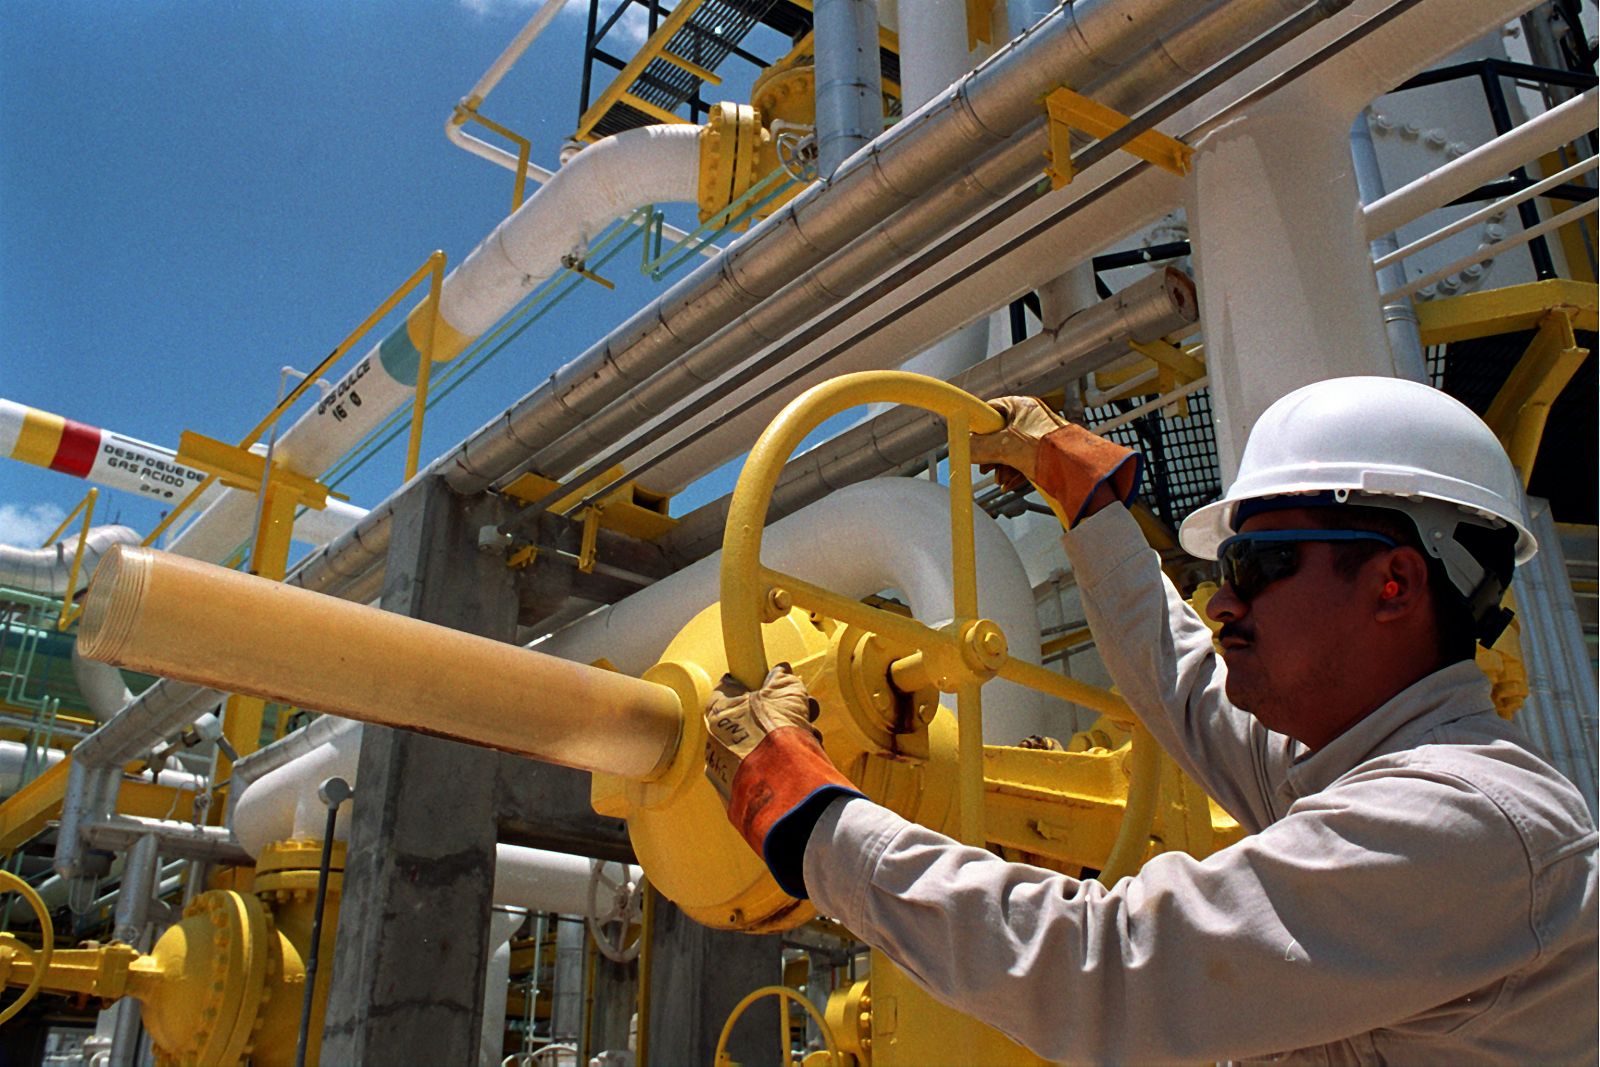 Fotografía cedida por la empresa Petróleos Mexicanos que muestra un trabajador en la refinería de Ciudad Pemex, en el estado de Tabasco (México).